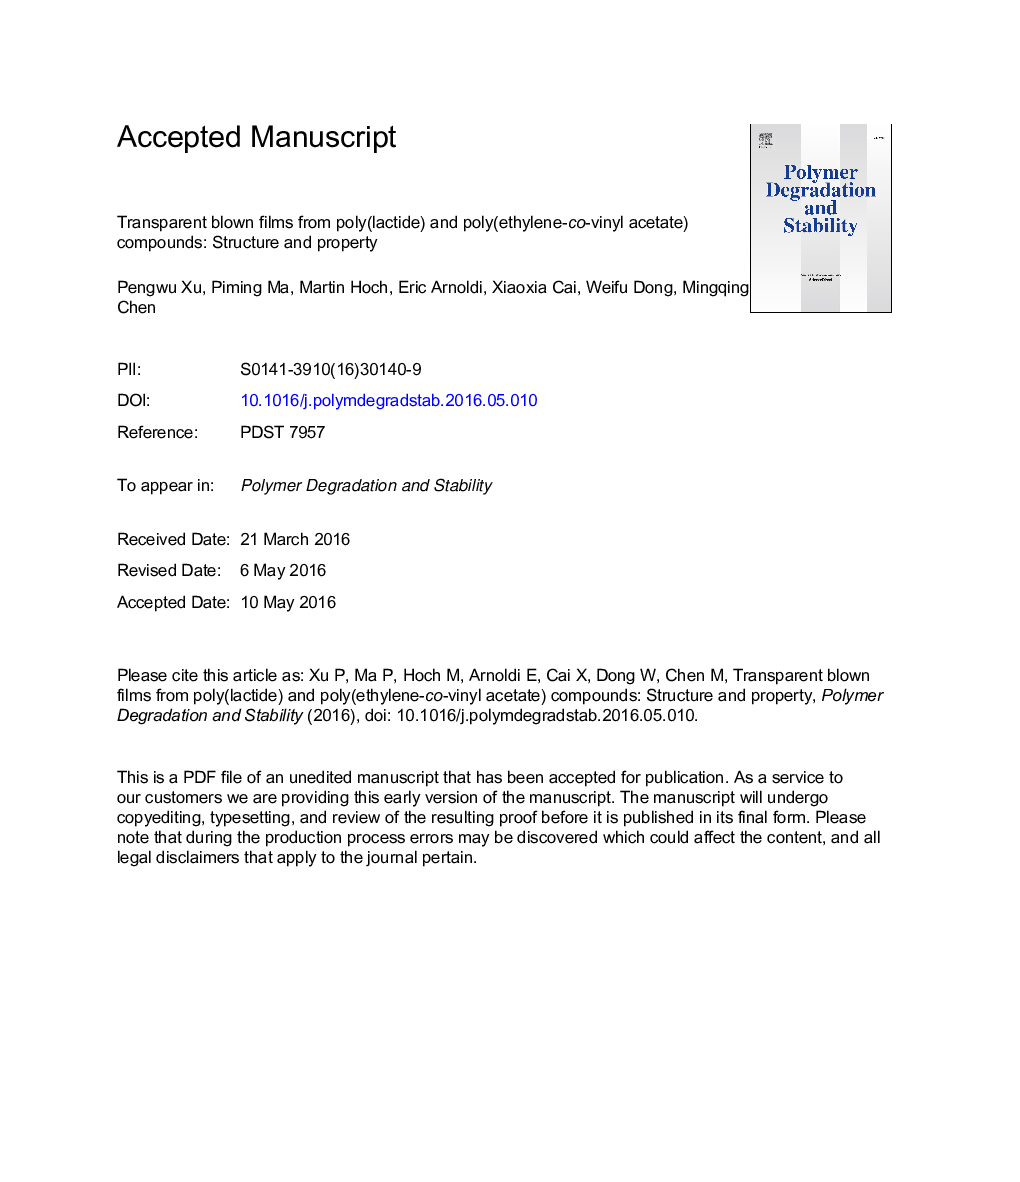 فیلم های ضخیم شفاف از ترکیبات پلی (لاکتید) و پلی (اتیلن و وینیل استات): ساختار و اموال 